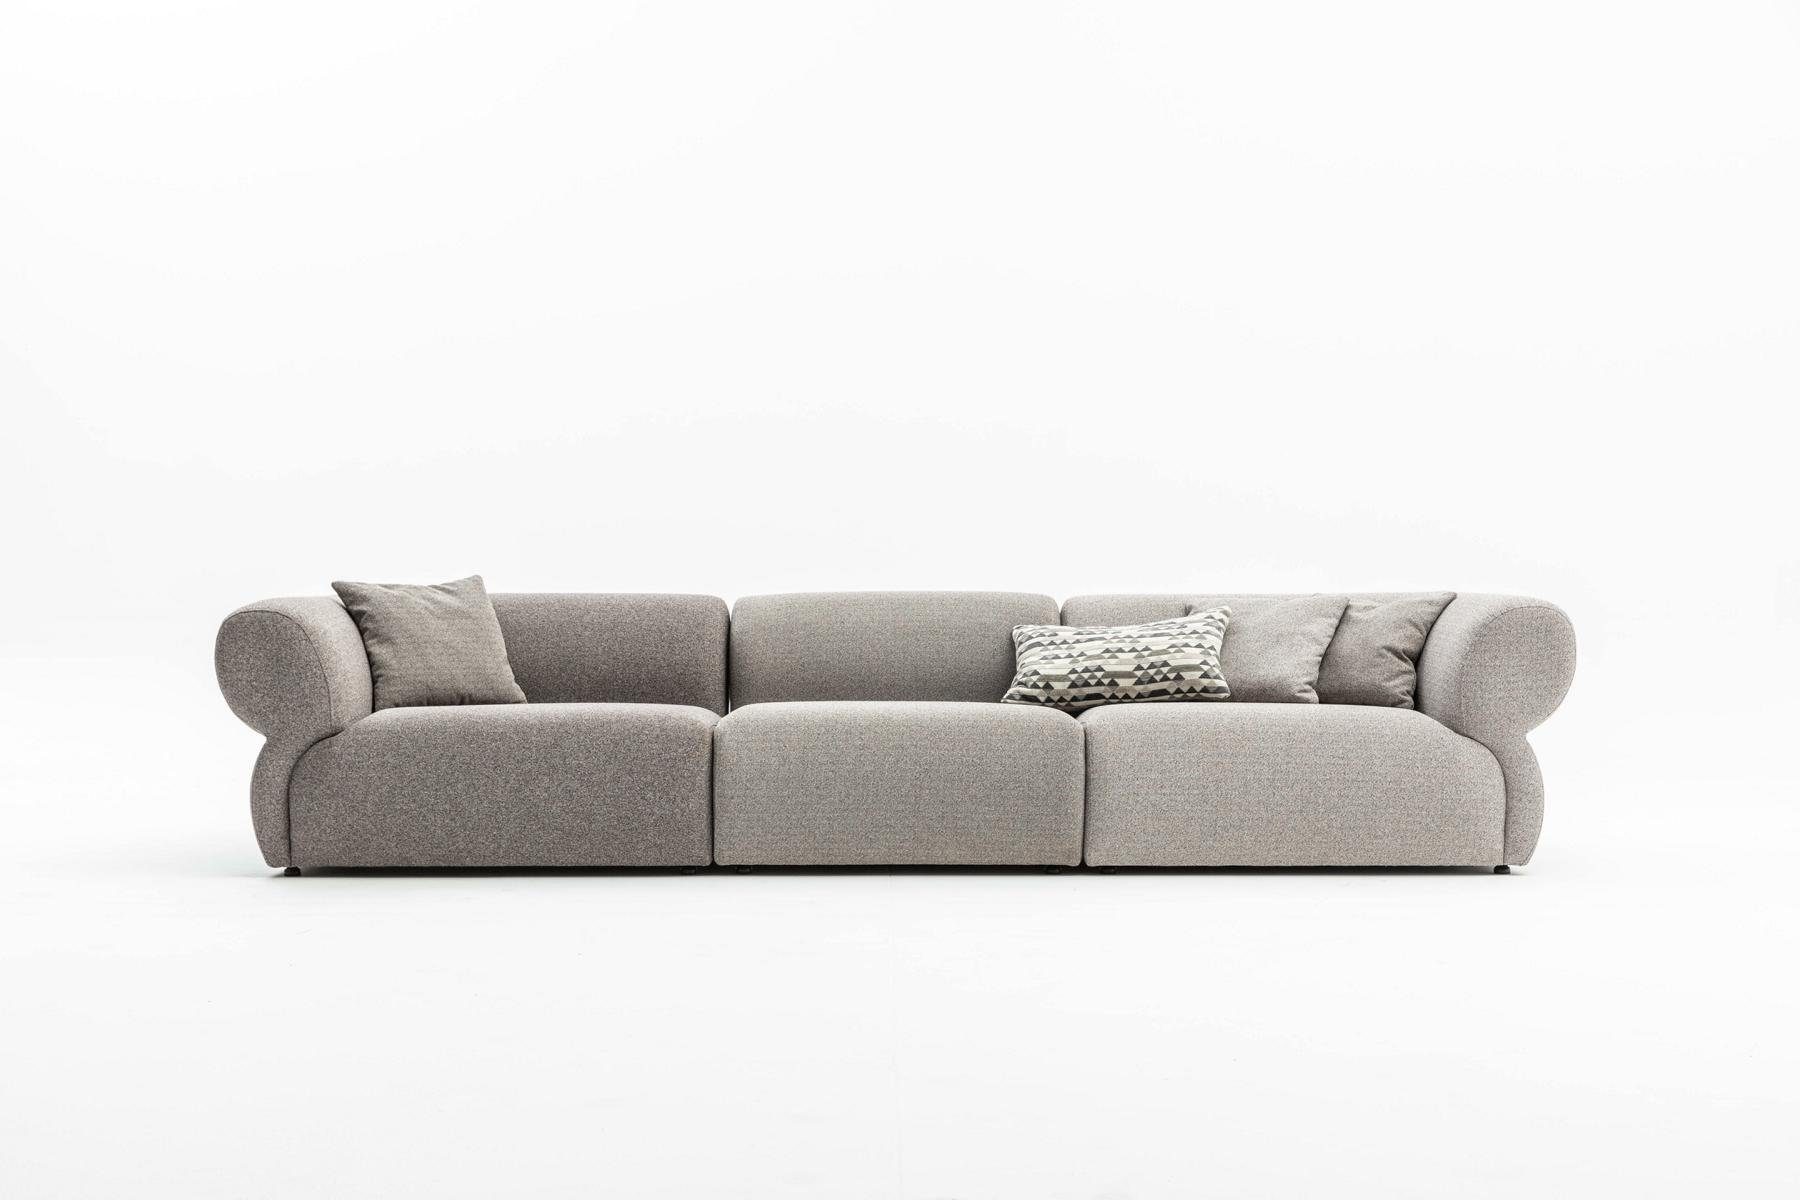 JVmoebel Big-Sofa Grau Sofa 5 Sitzer Wohnzimmer Luxus Design Couch Möbel 370cm, Made in Europe